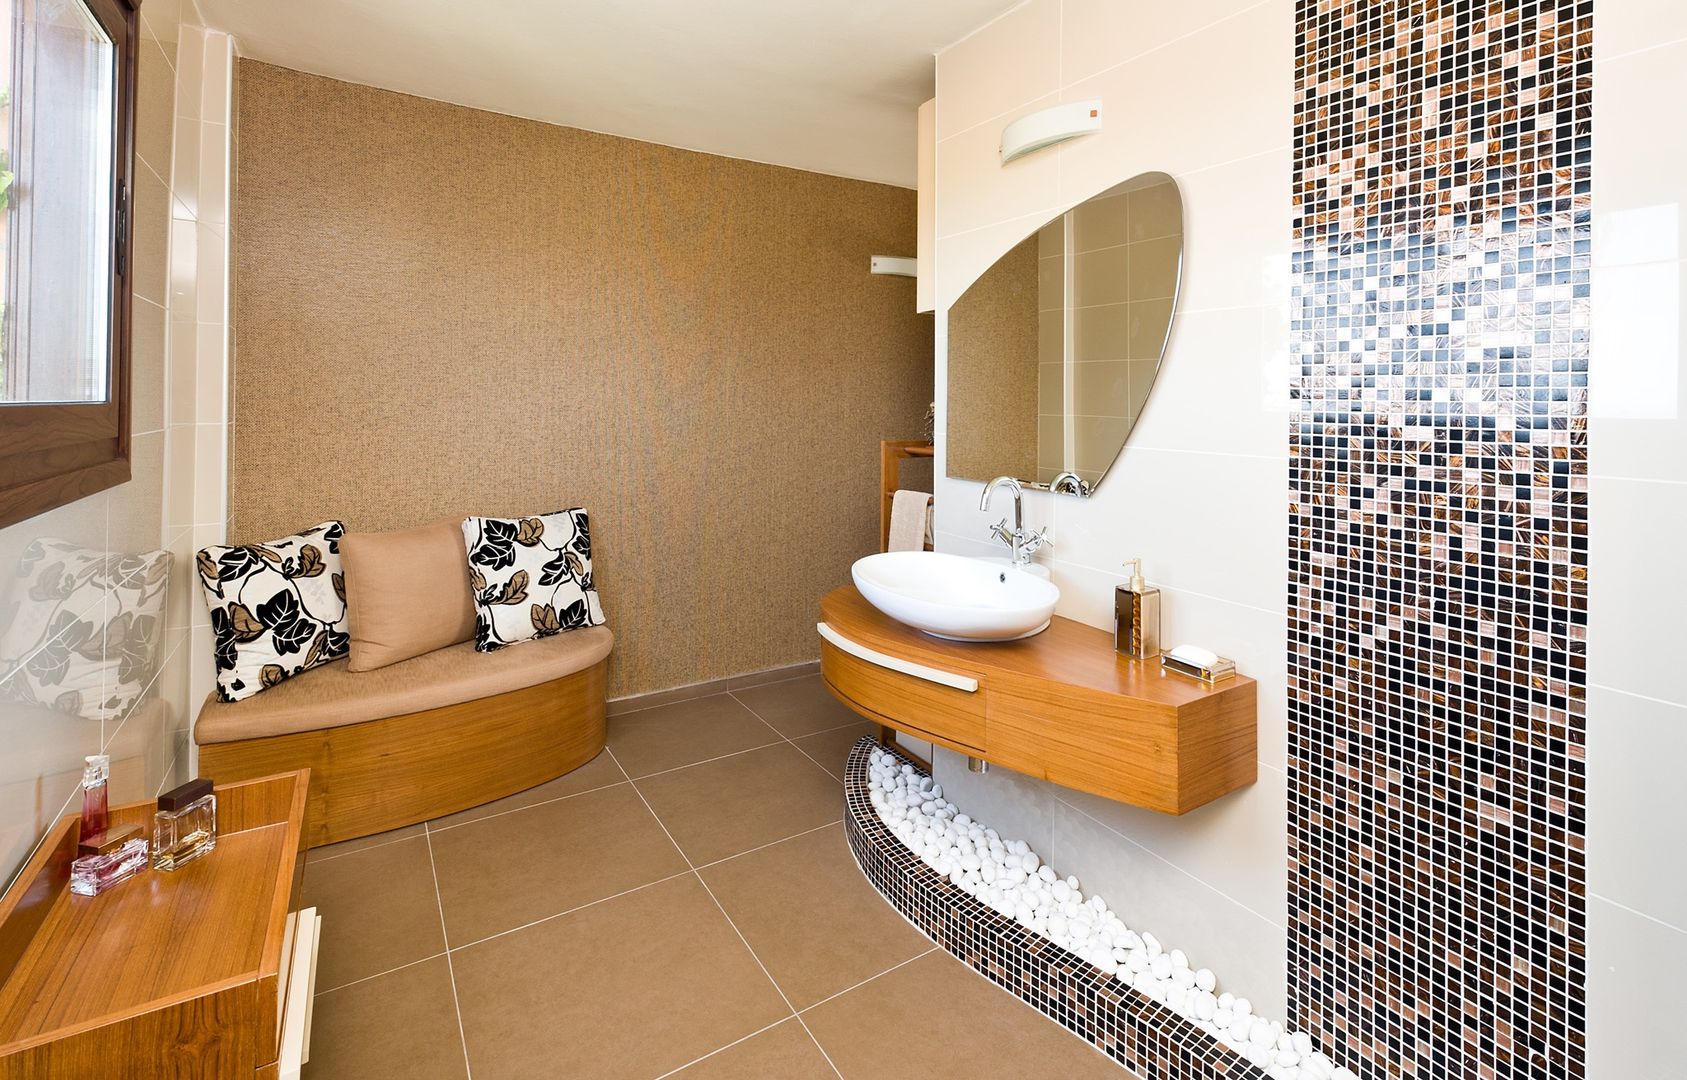 Bathroom / Girne / Cyprus, Şölen Üstüner İç mimarlık Şölen Üstüner İç mimarlık Modern bathroom